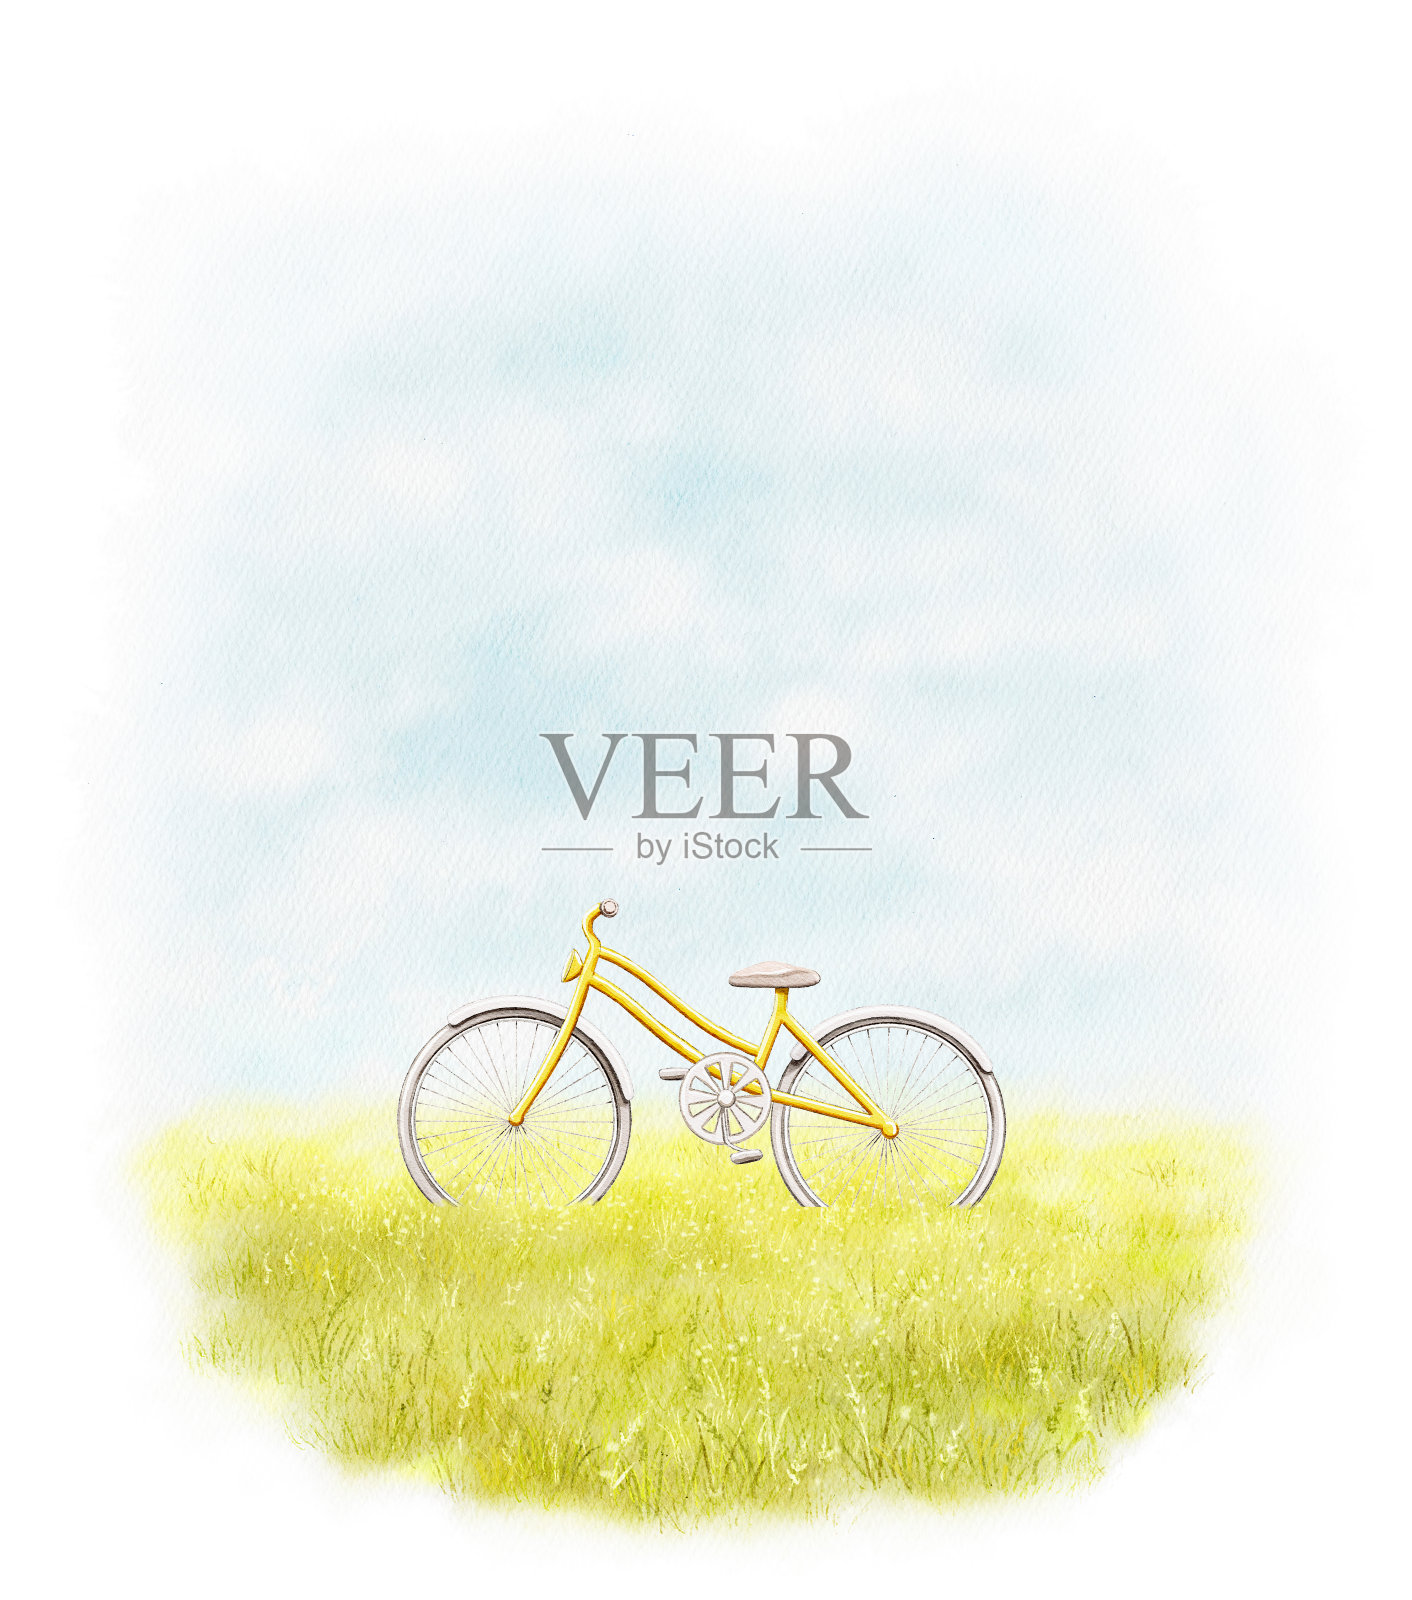 水彩插图的风景风景，夏季草地，天空和黄色的女性自行车设计元素图片